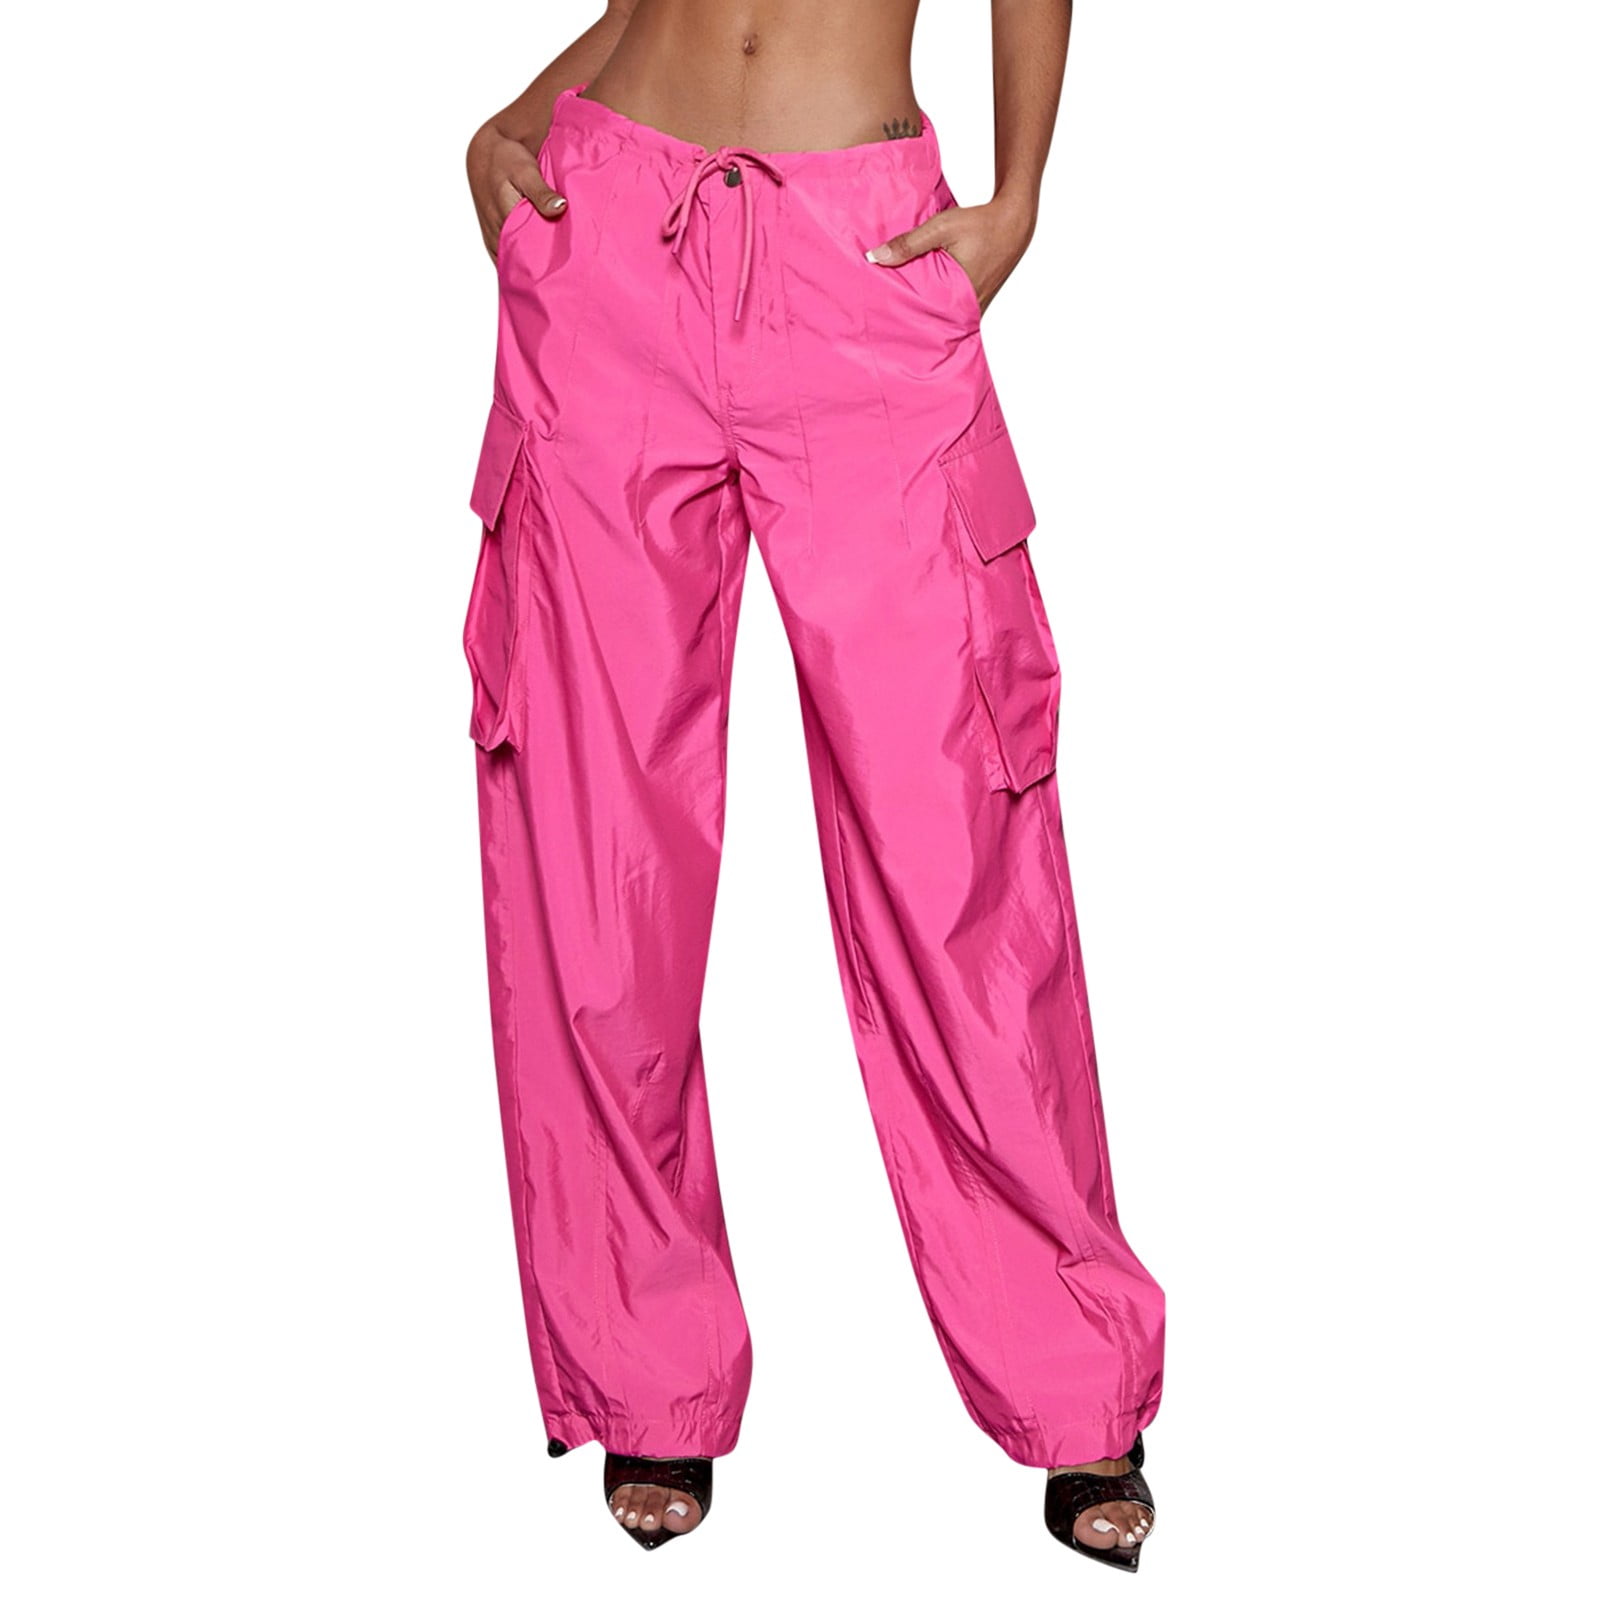 Loose Fit Parachute Pants Pink  Parachute pants outfit, Parachute pants,  Loose fitting